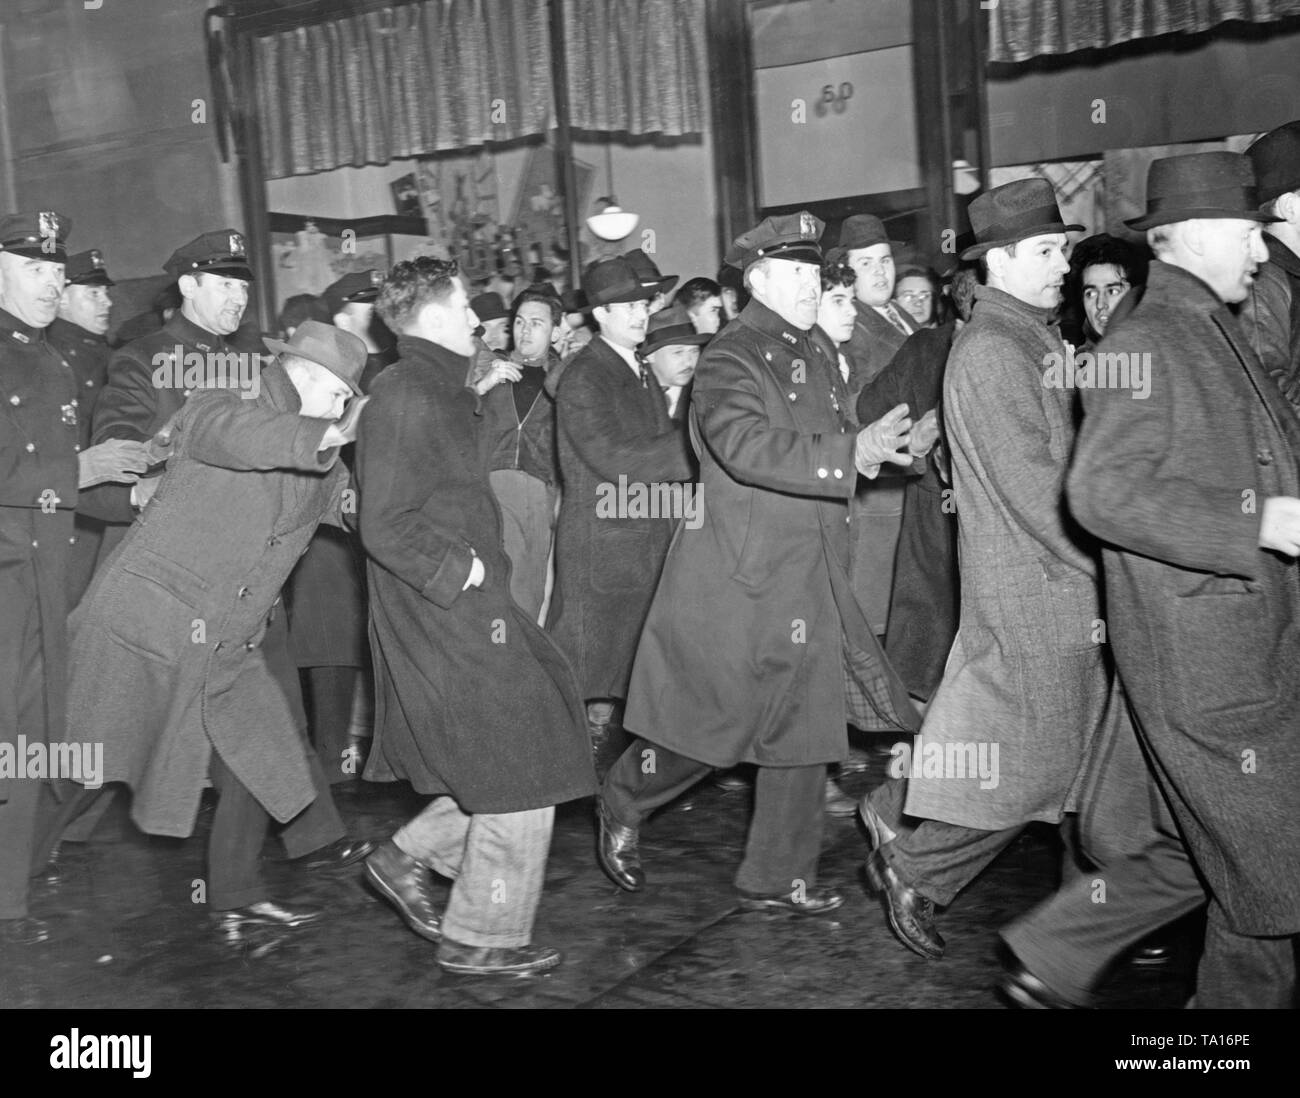 Polizisten in Uniform und Zivil ein Protest für die Rettung und für eine bessere Behandlung der Flüchtlinge aus dem Spanischen Bürgerkrieg vor dem französischen Konsulat auf der 5th Avenue (49th Street) am 29. März 1940 aufzulösen. Die Versammlung wurde von der Emergency Committee zu speichern Spanische Flüchtlinge organisiert. Einige Demonstranten wurden festgenommen. Die Demonstration wurde von der Ausschuß zu speichern Spanische Flüchtlinge organisiert. Stockfoto